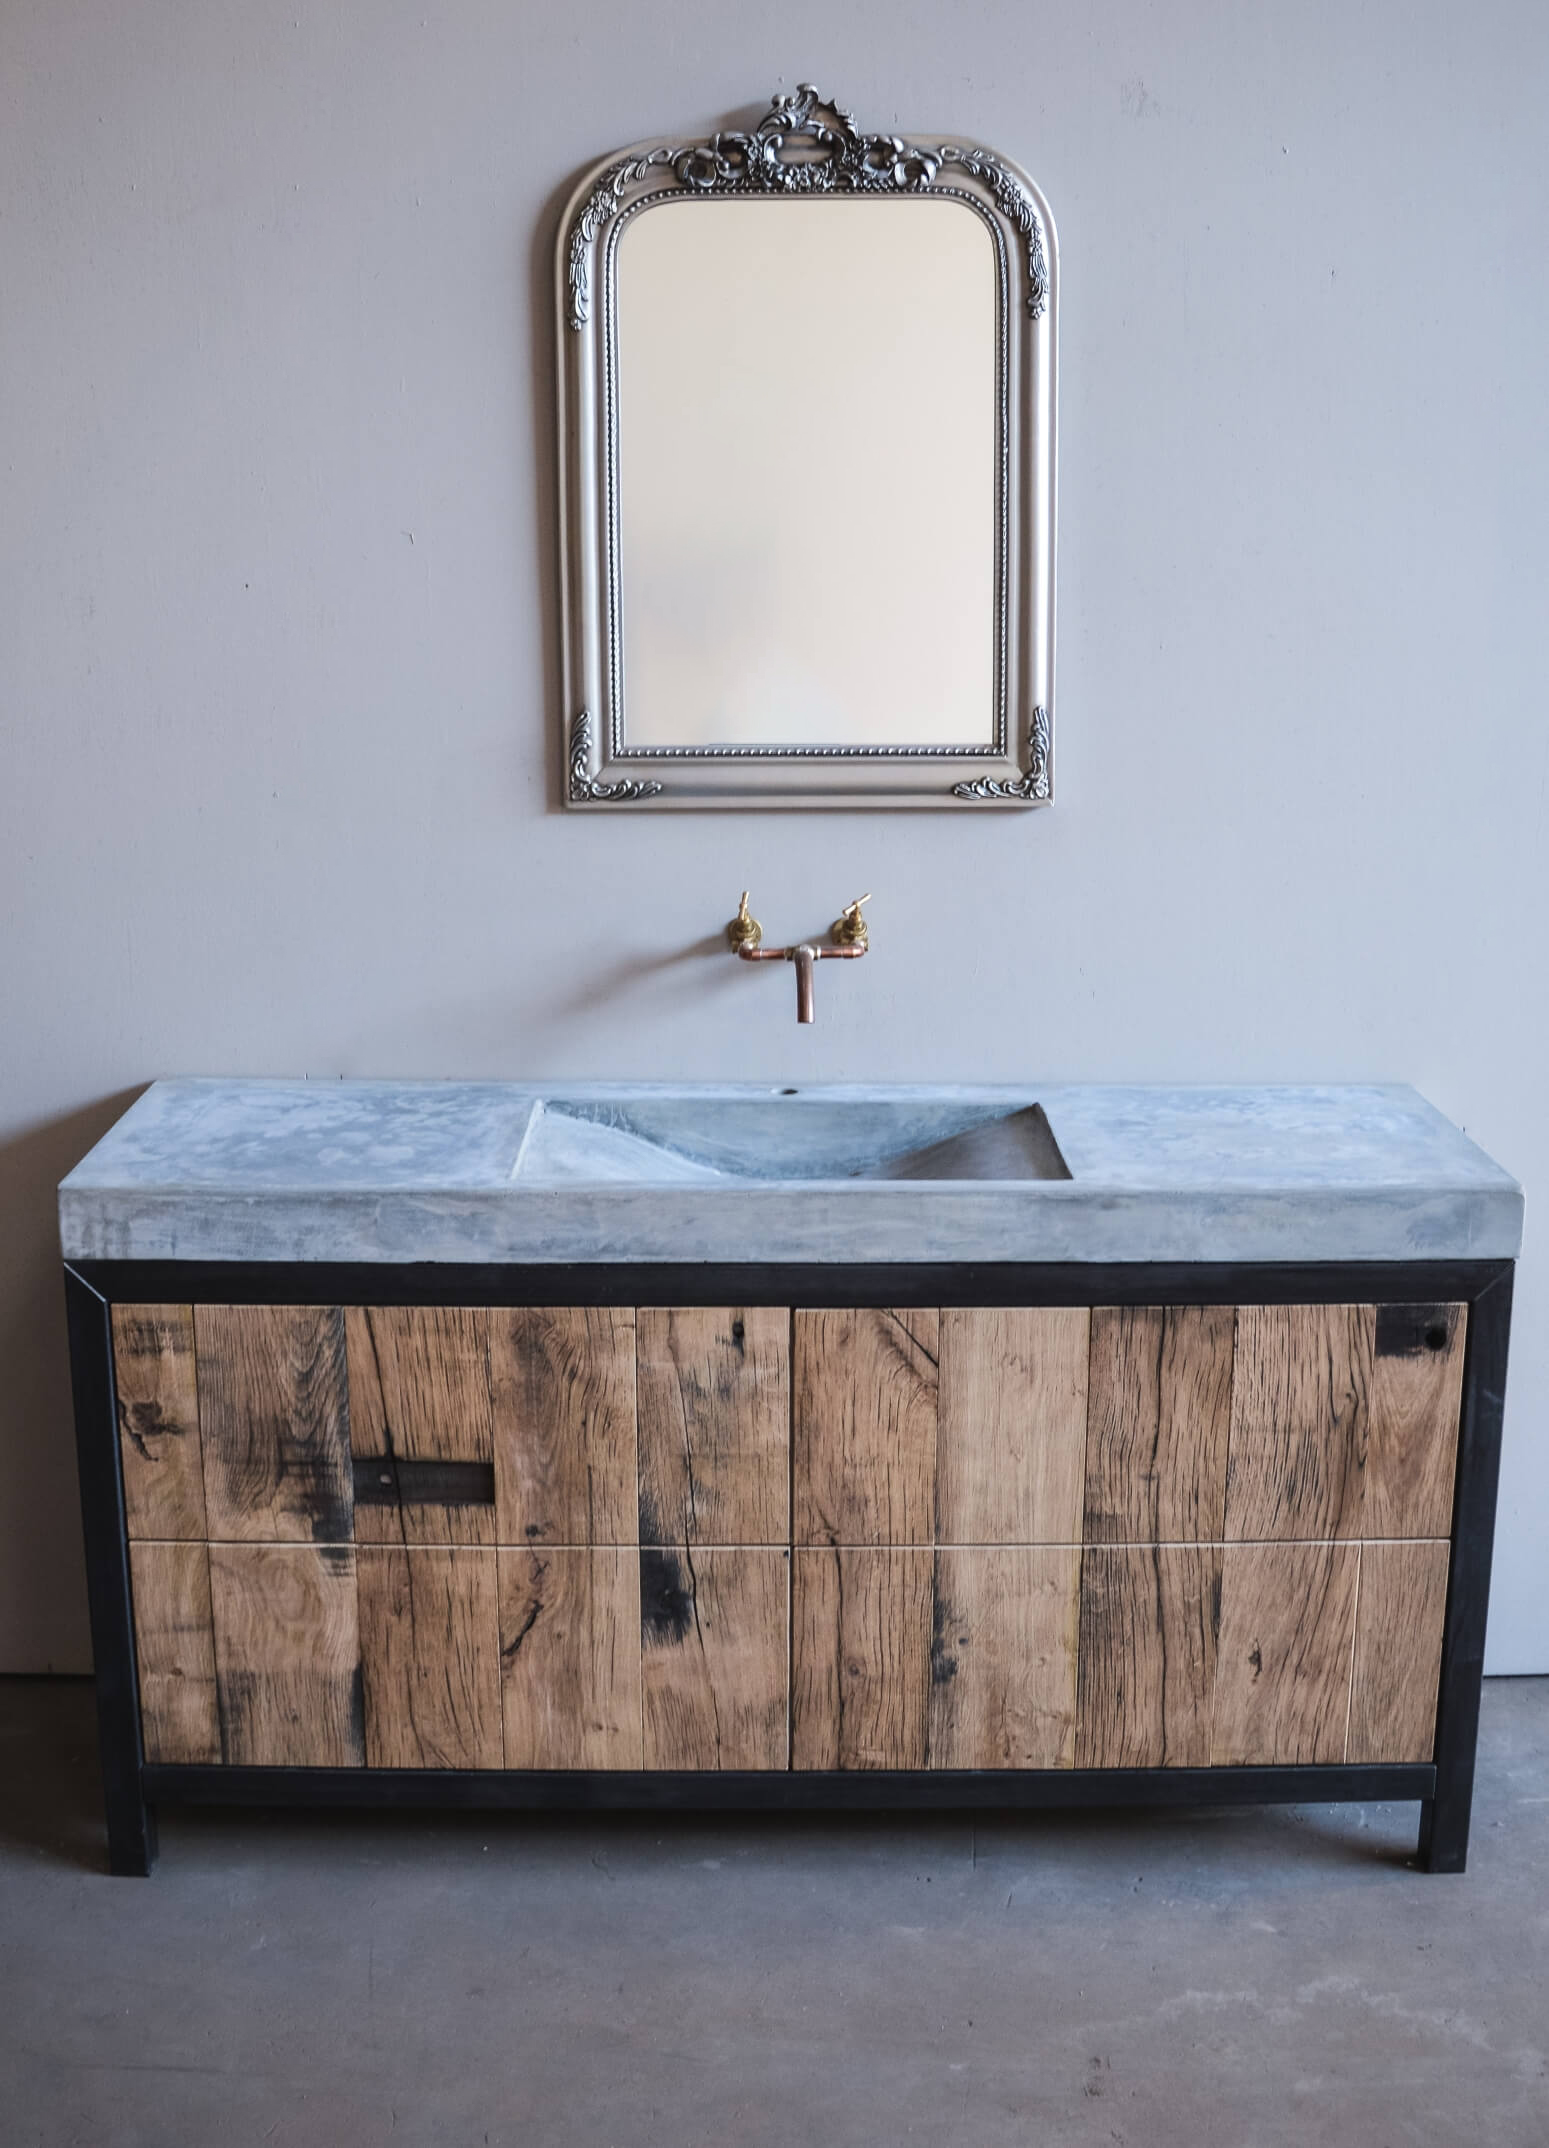 Wastafel - Badkamer meubels op maat gemaakt van hout en beton of staal. zoals wilt hebben.